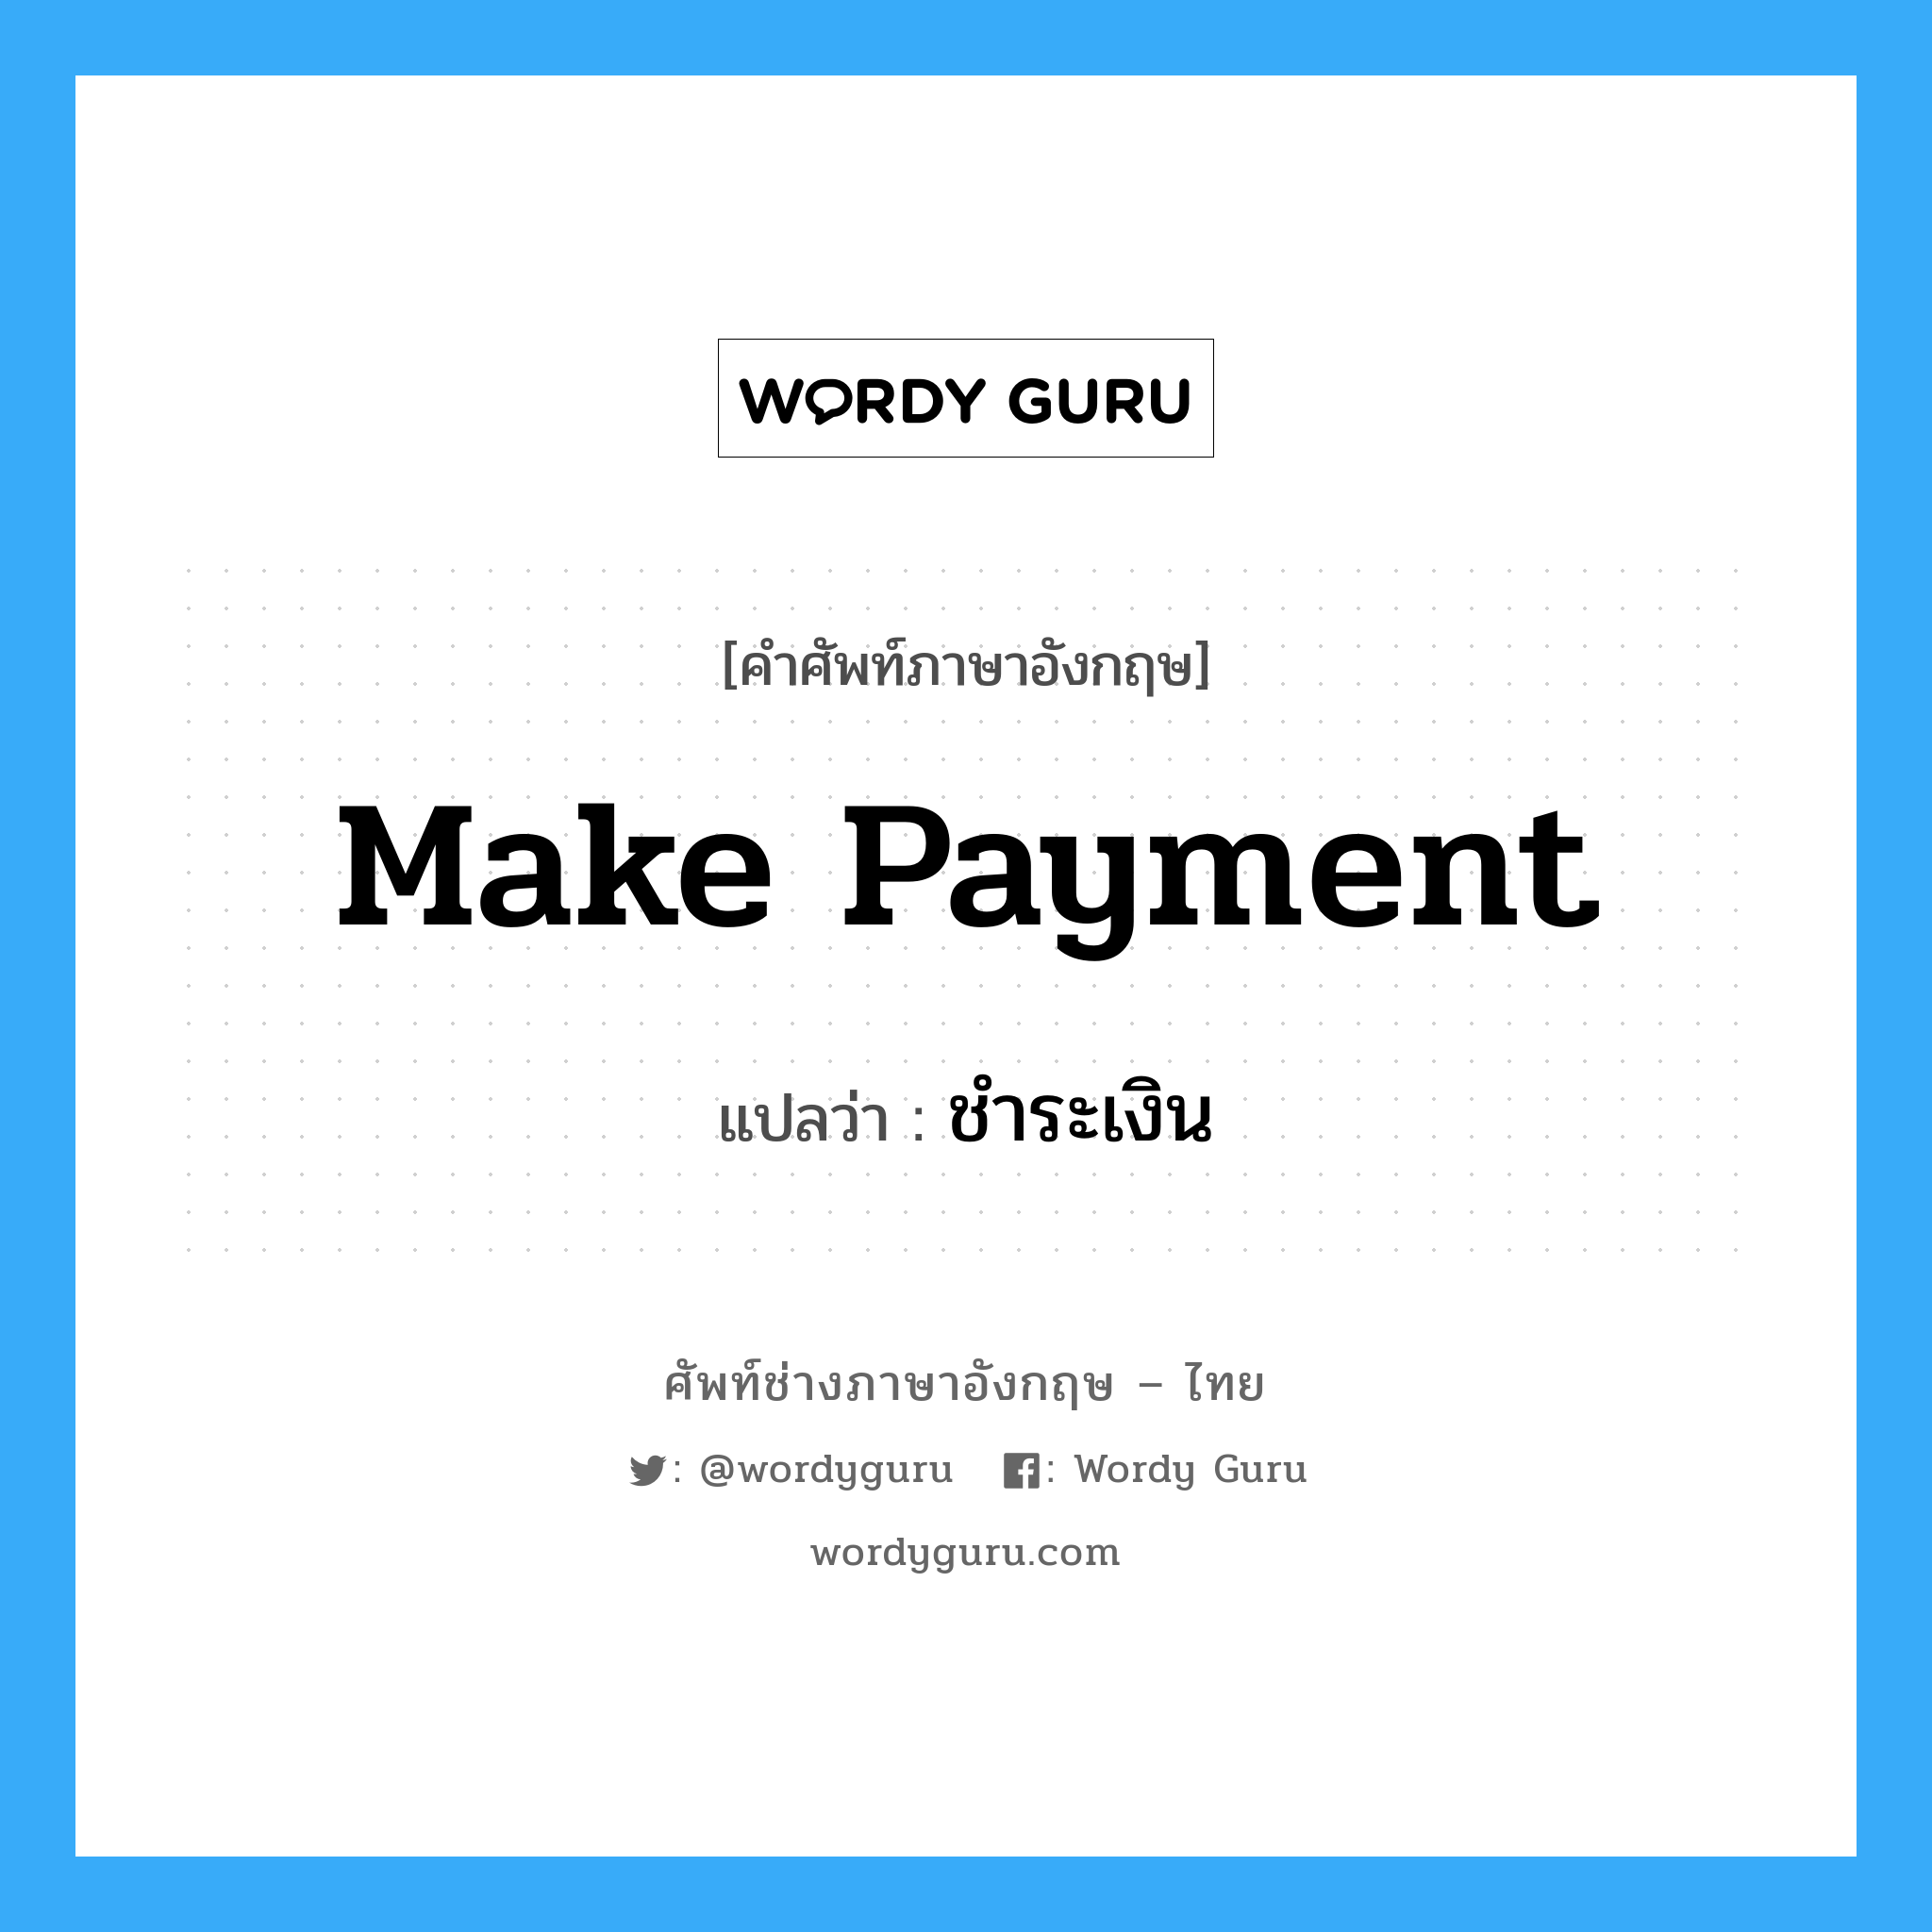 make Payment แปลว่า?, คำศัพท์ช่างภาษาอังกฤษ - ไทย make Payment คำศัพท์ภาษาอังกฤษ make Payment แปลว่า ชำระเงิน